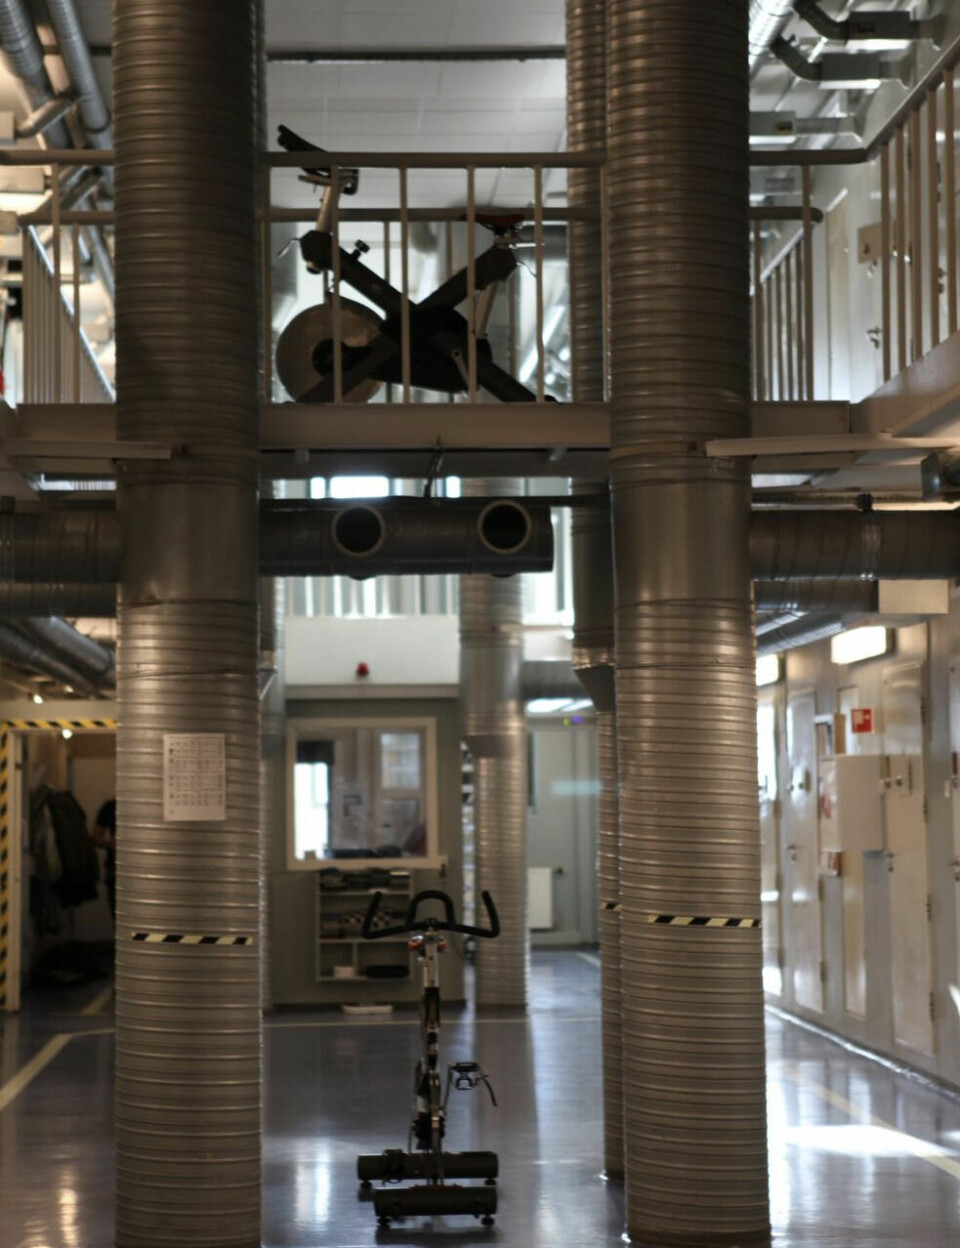 I gangene står det spinningsykler som de innsatte fritt kan benytte. Foto: Selma Nordby Ulvestad